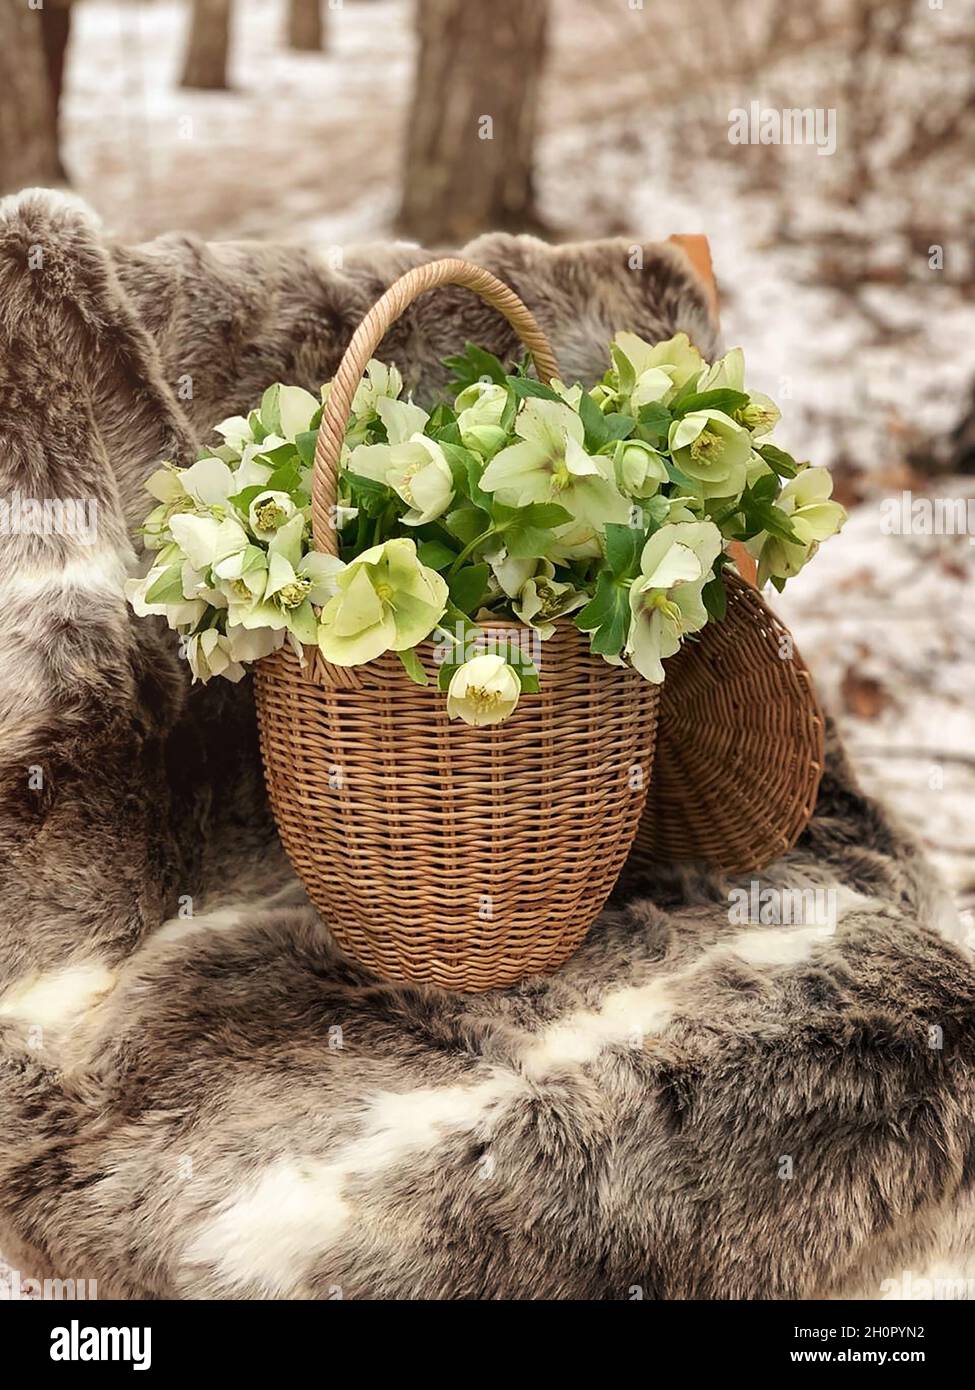 Bouquet de fleurs blanches hellebore fleurs Lenten Rose plantes dans un  panier en osier debout sur une chaise recouverte d'un tapis de peau d'animal  dans une forêt enneigée d'hiver Photo Stock -